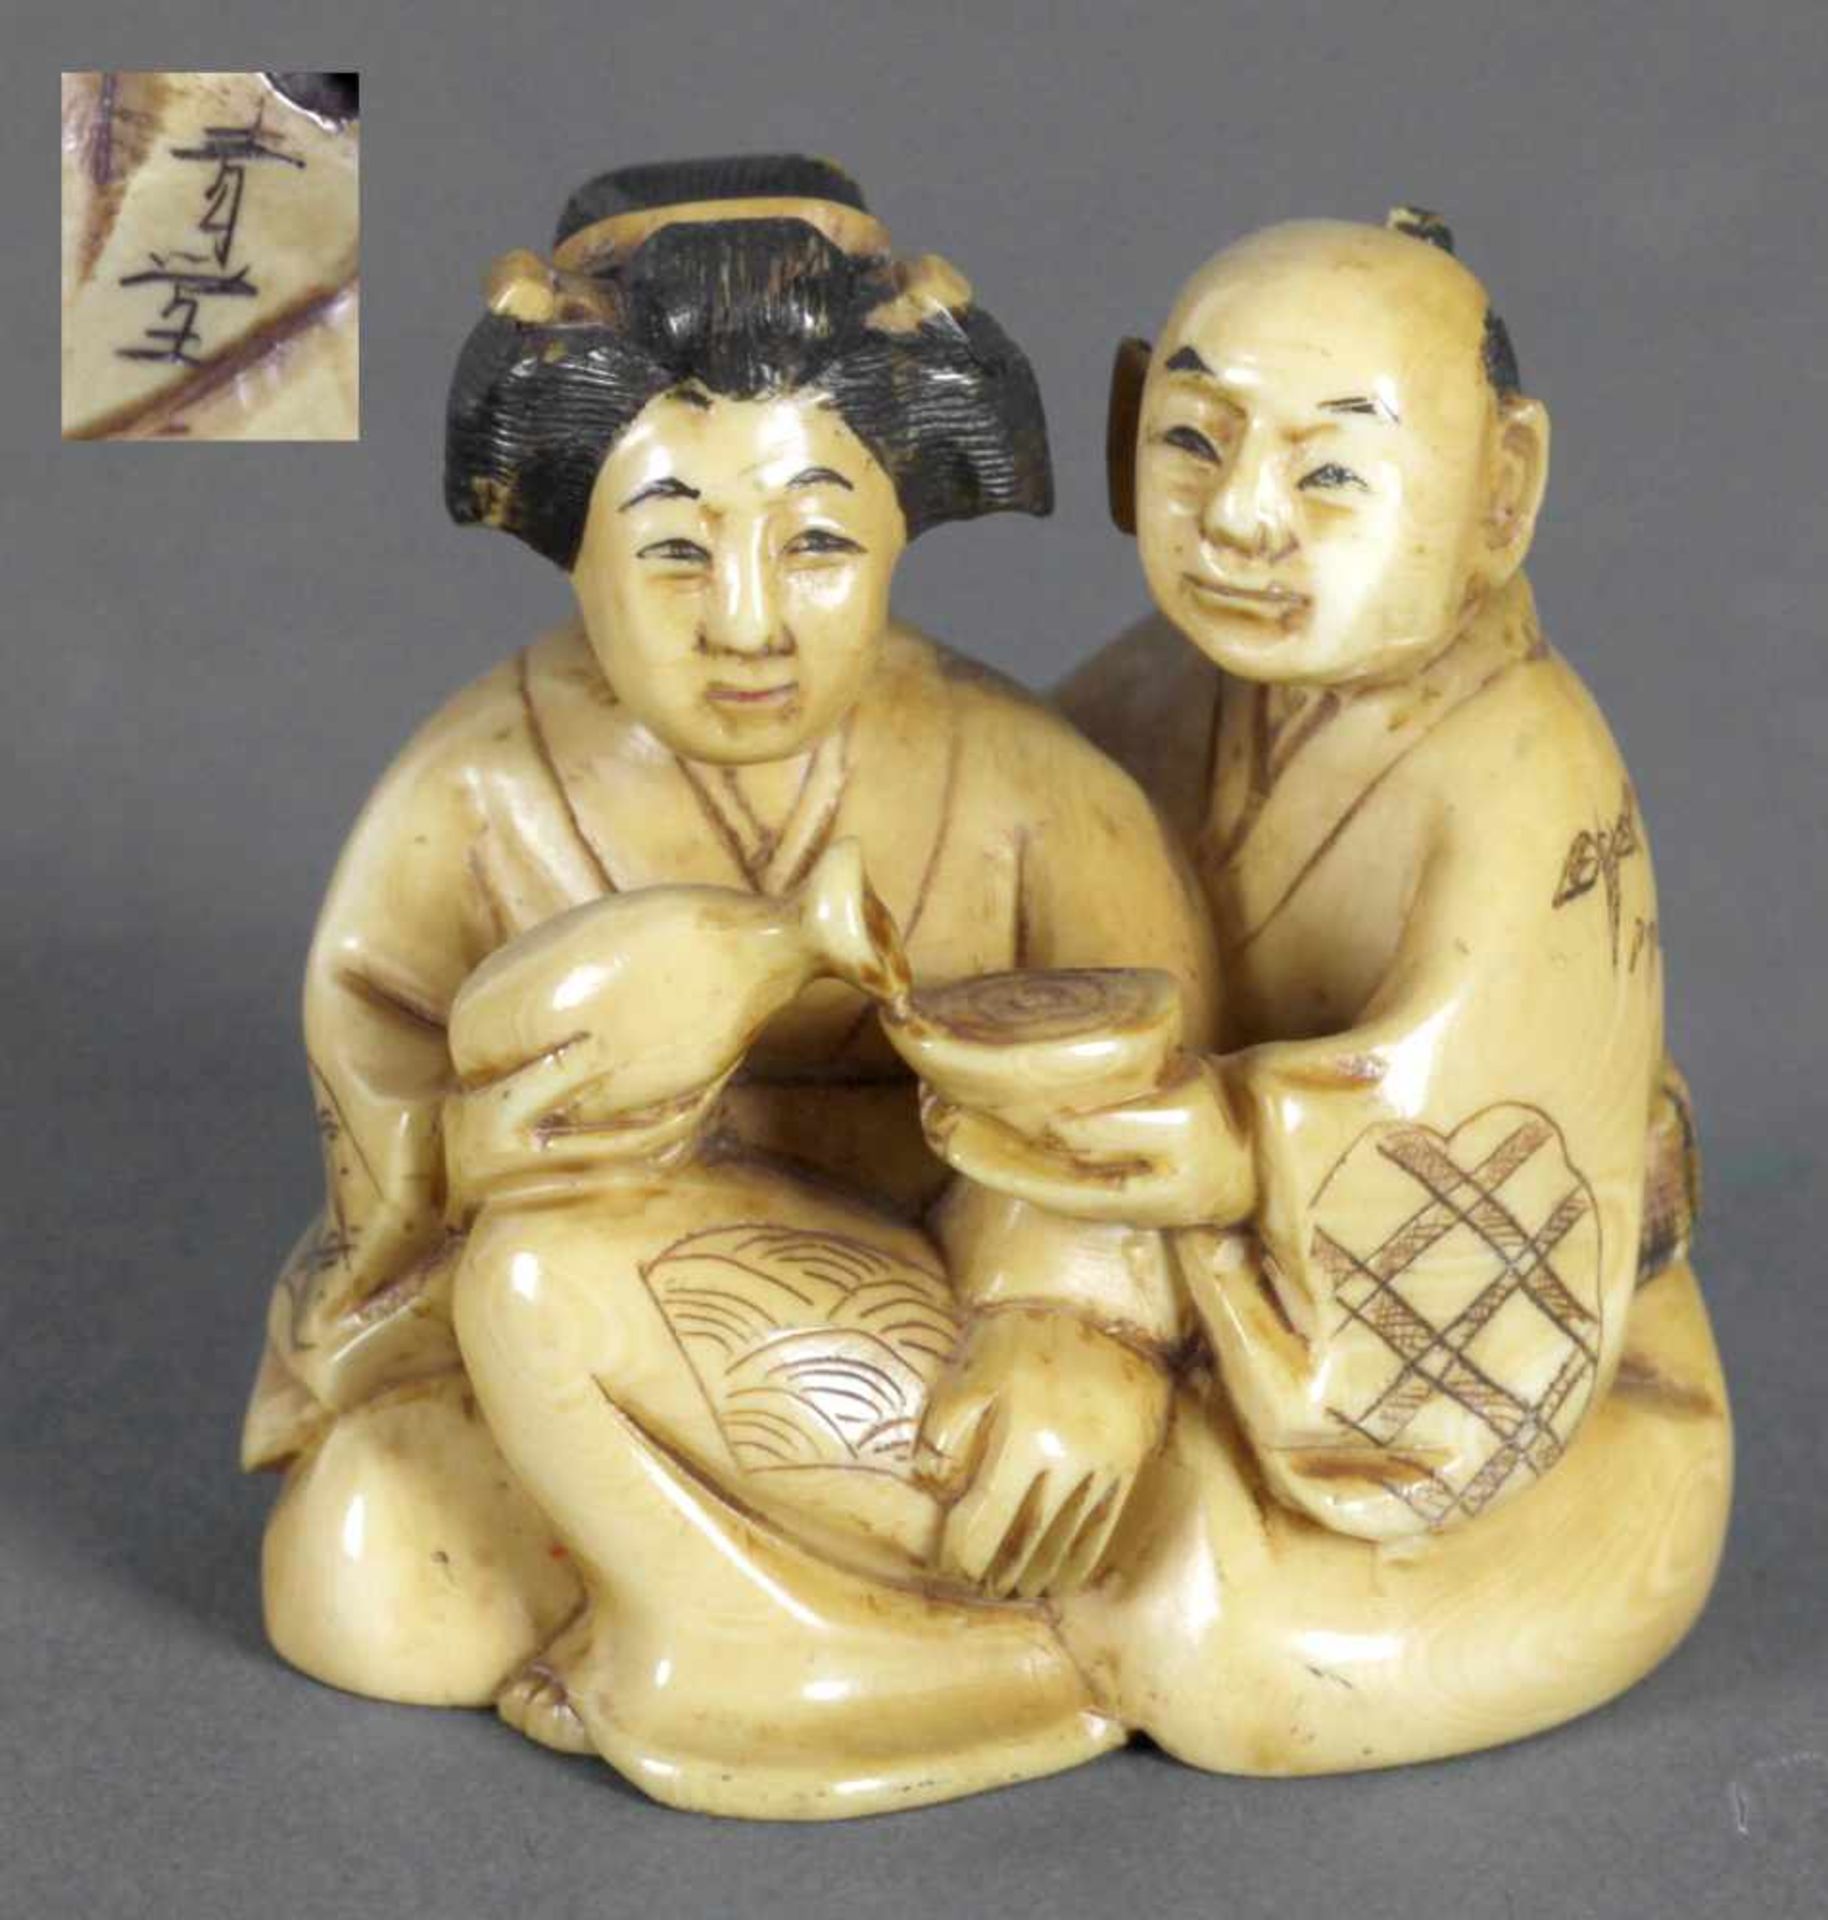 Netsuke eines Paares in Sitzposition, 19. Jh.Elfenbein gelb patiniert, er reicht mit der linken Hand